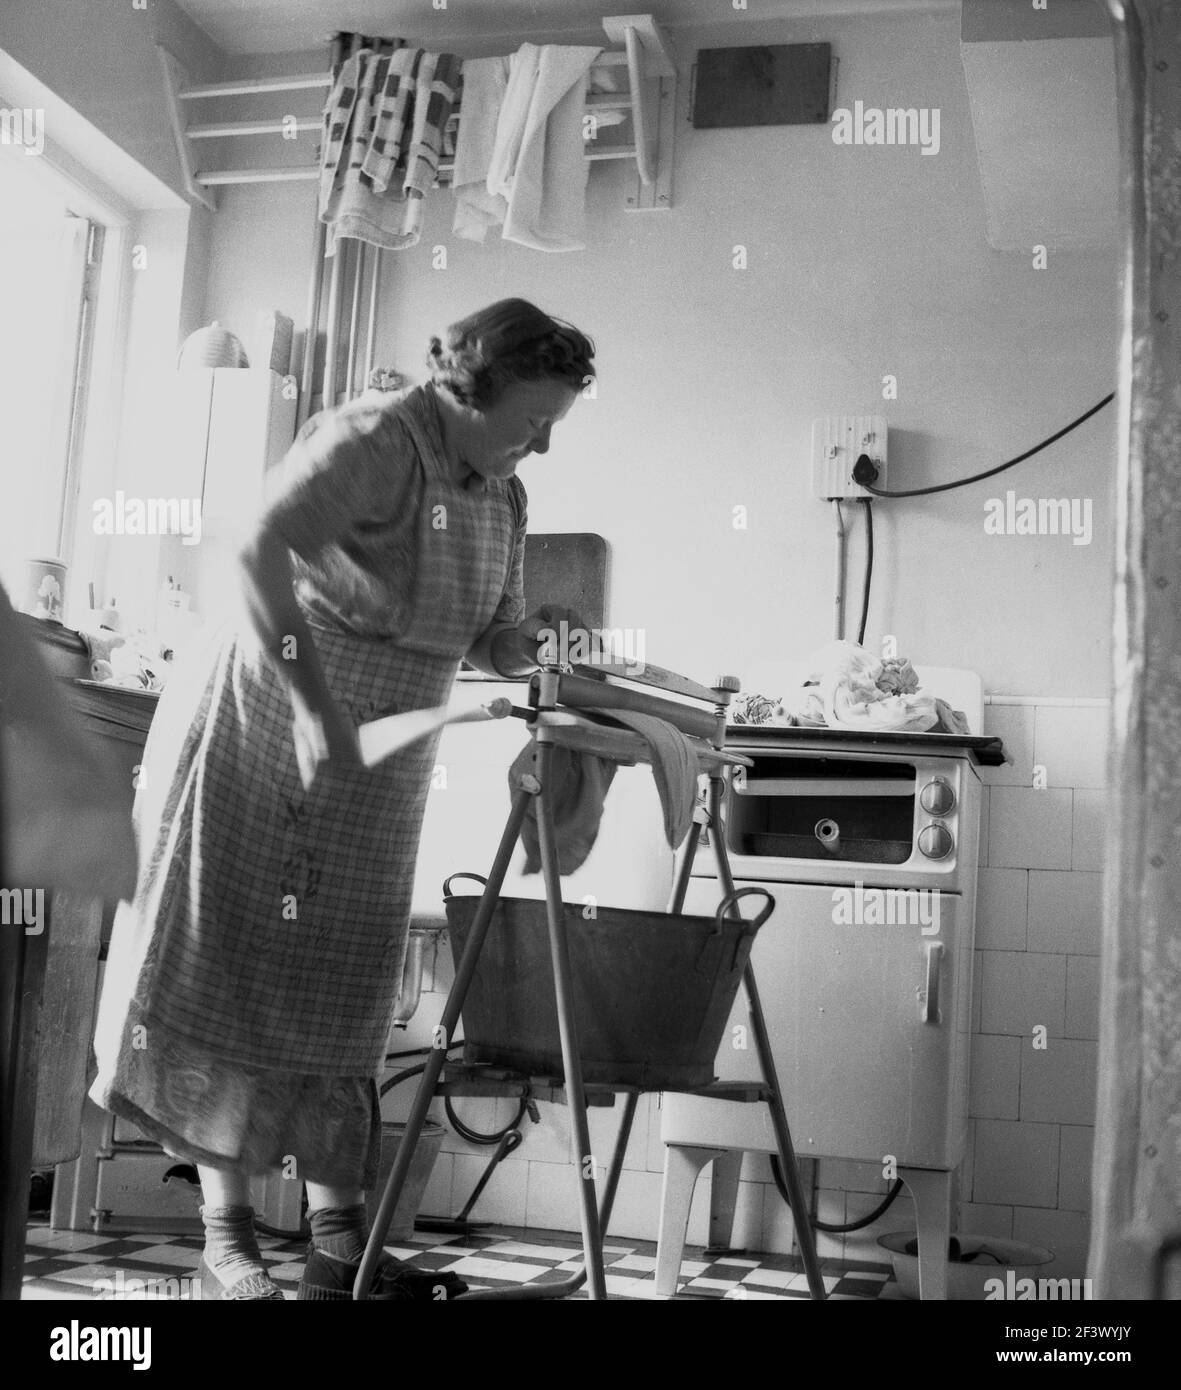 1950s, historique, une femme mûre dans une pinafore dans une cuisine utilisant un simple mangle pour extraire l'eau des vêtements lavés, Angleterre, Royaume-Uni, avec un seau en métal en dessous pour capturer l'eau en excès. Une mangle ou un essoreur, comme on l'appelle également, est une aide à la lessive mécanique, qui a deux rouleaux dans un cadre et est travaillé par une manivelle pour essorer l'eau de la lessive humide. Banque D'Images